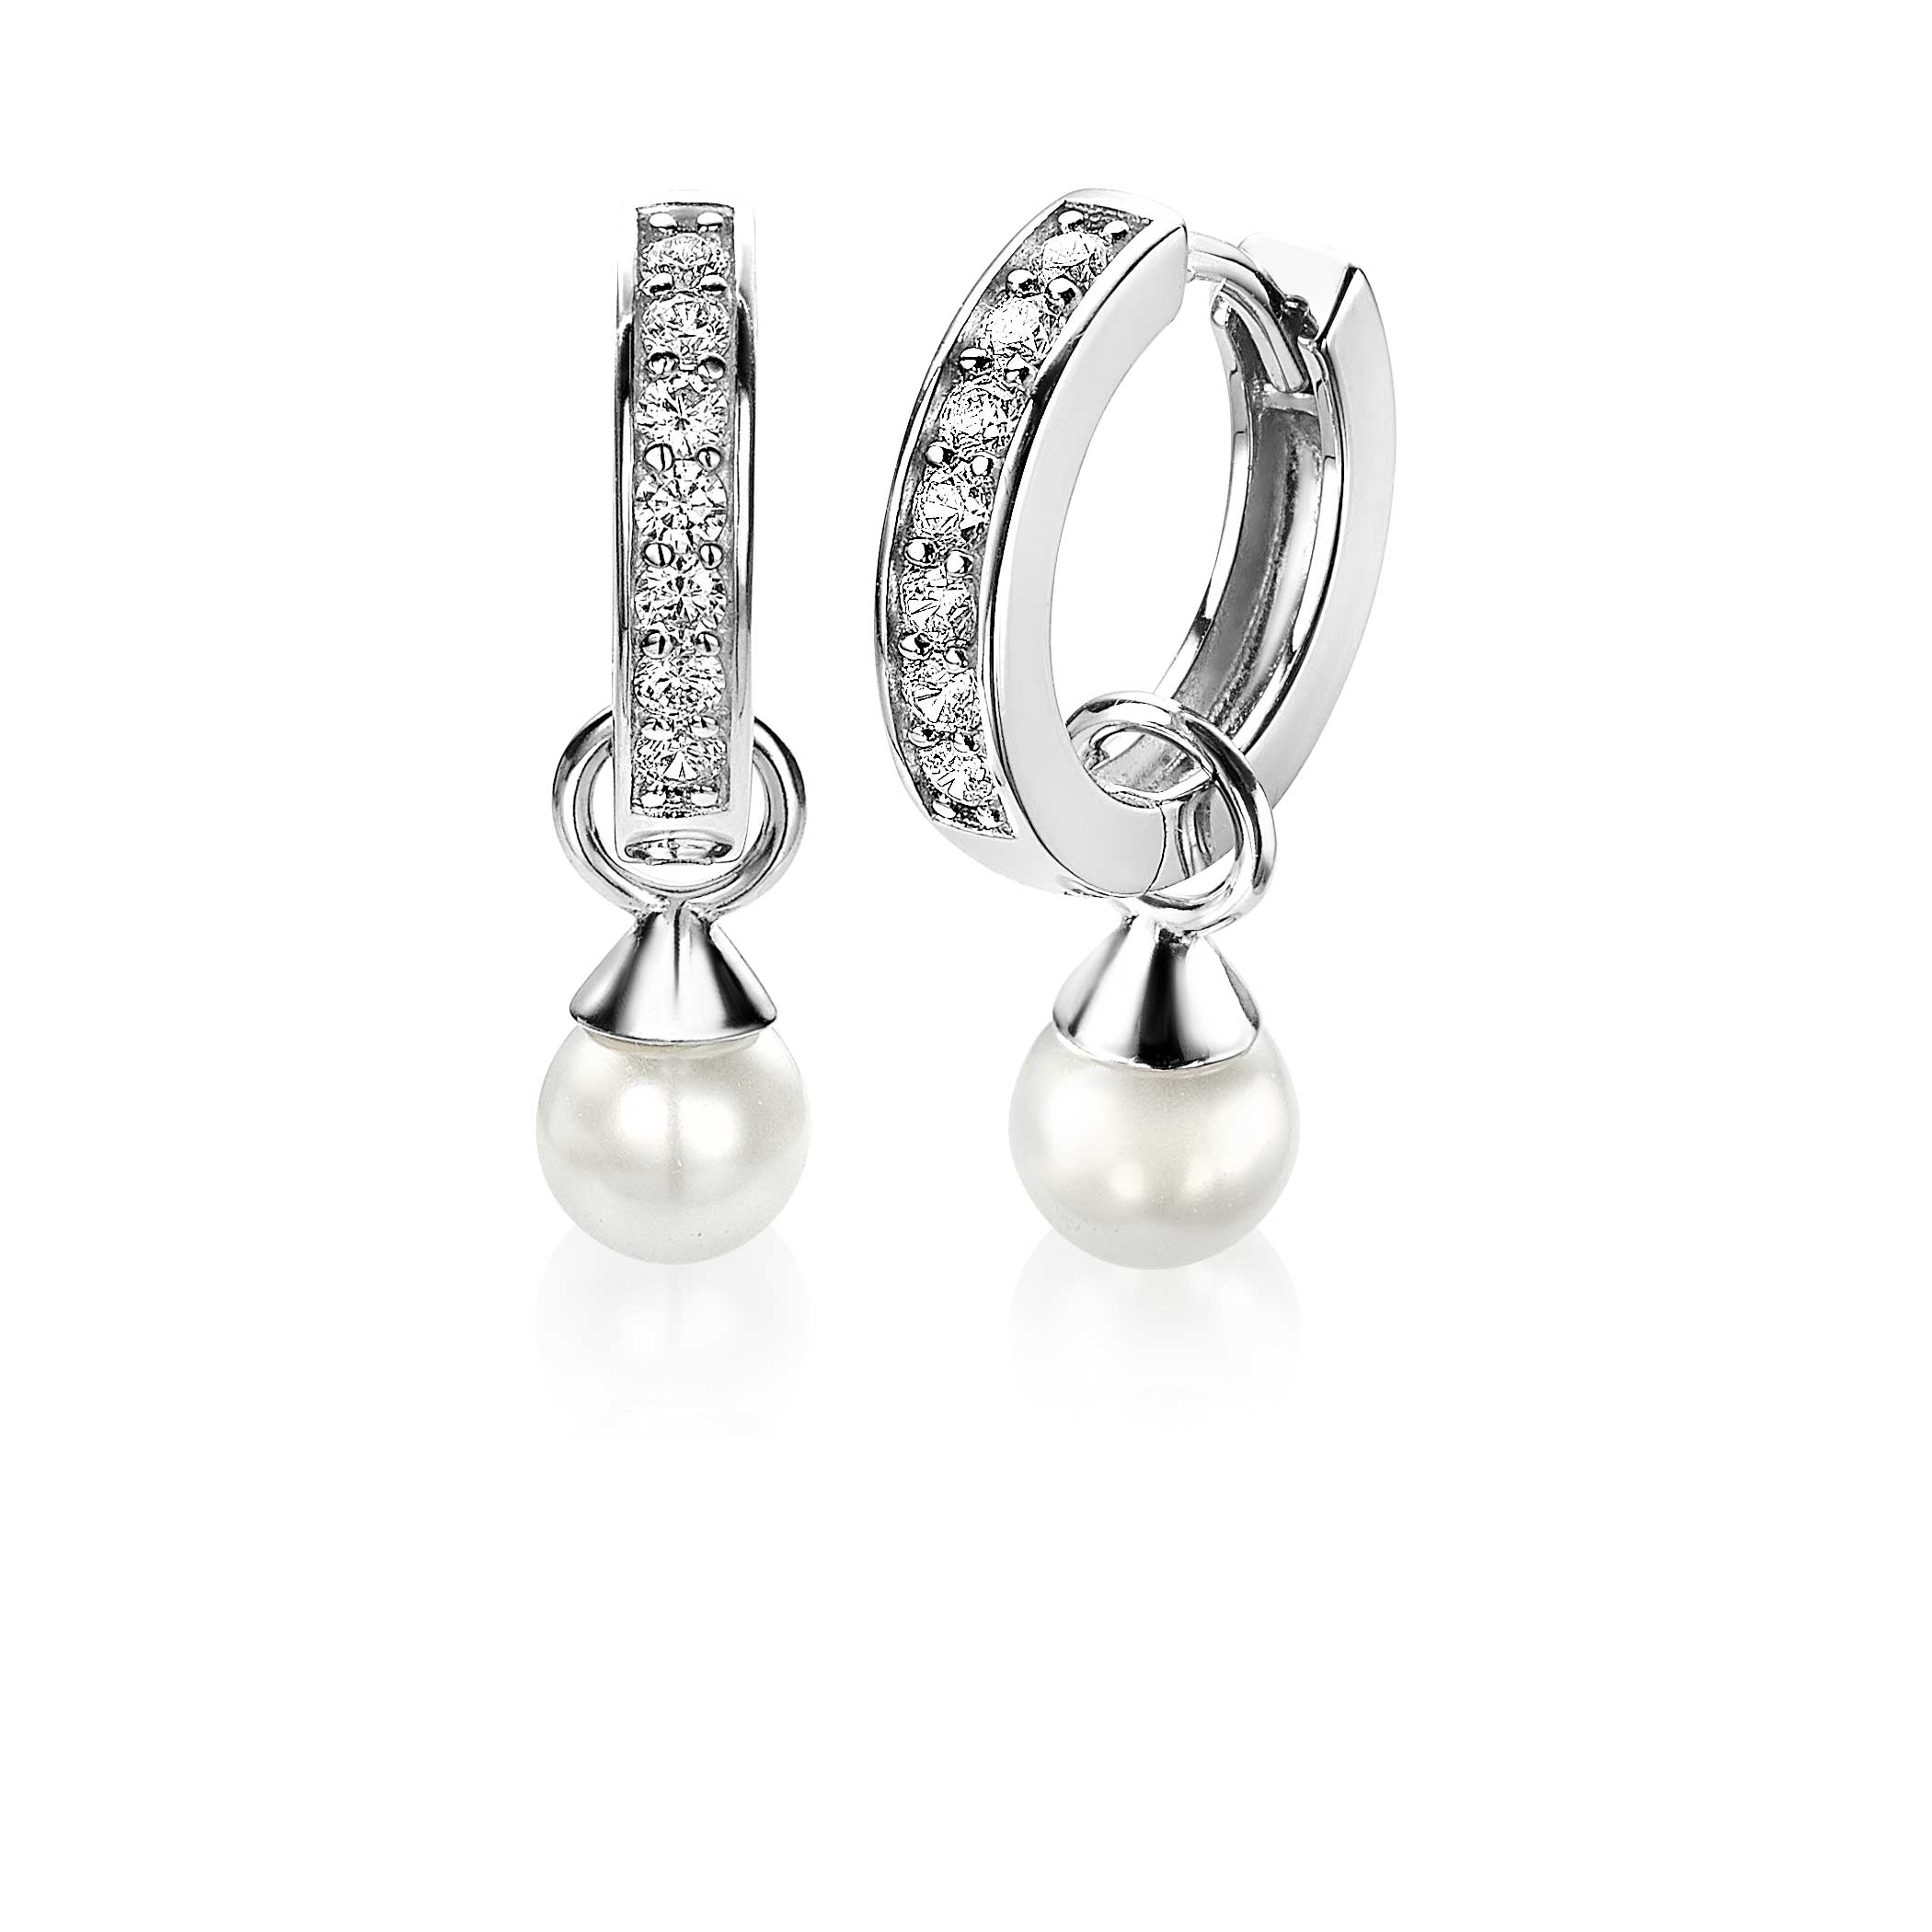 ZINZI Sterling Silver Earrings Pendants Pearl White ZICH1749W (excl. hoop earrings)